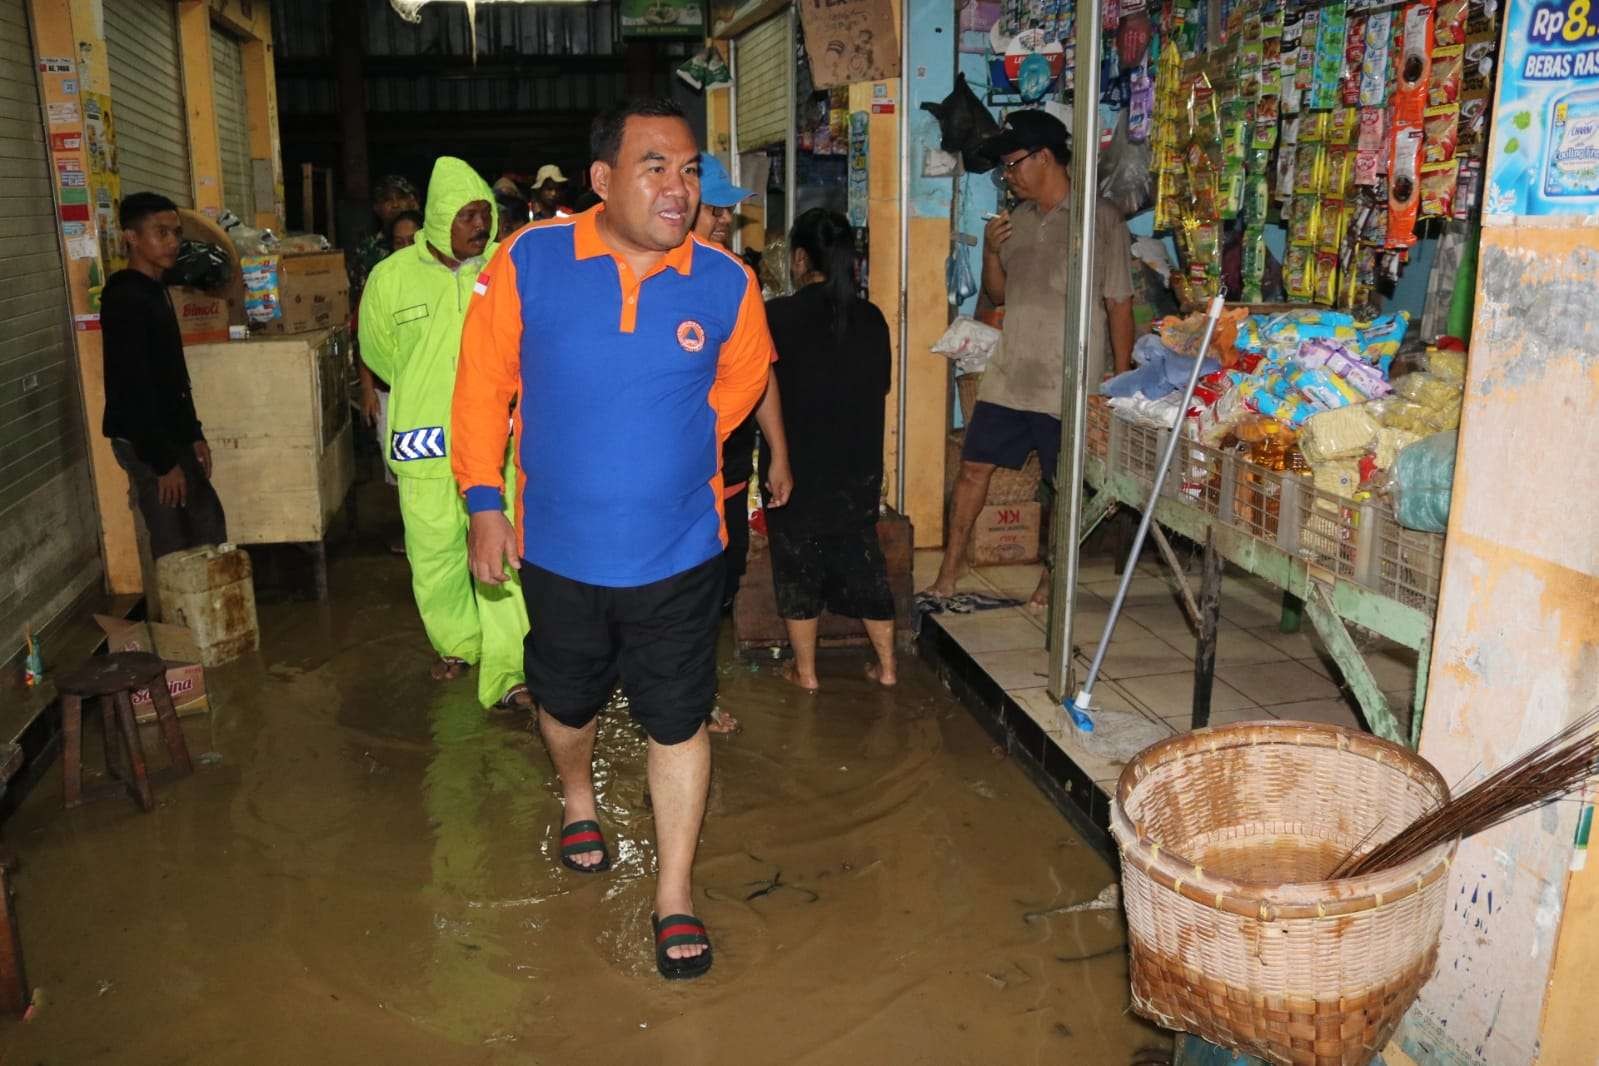 Bupati Blora Arief Rohman meninjau Pasar Rakyat Jepon pada Selasa 29 November 2022 malam (foto: Humas Pemkab Blora)